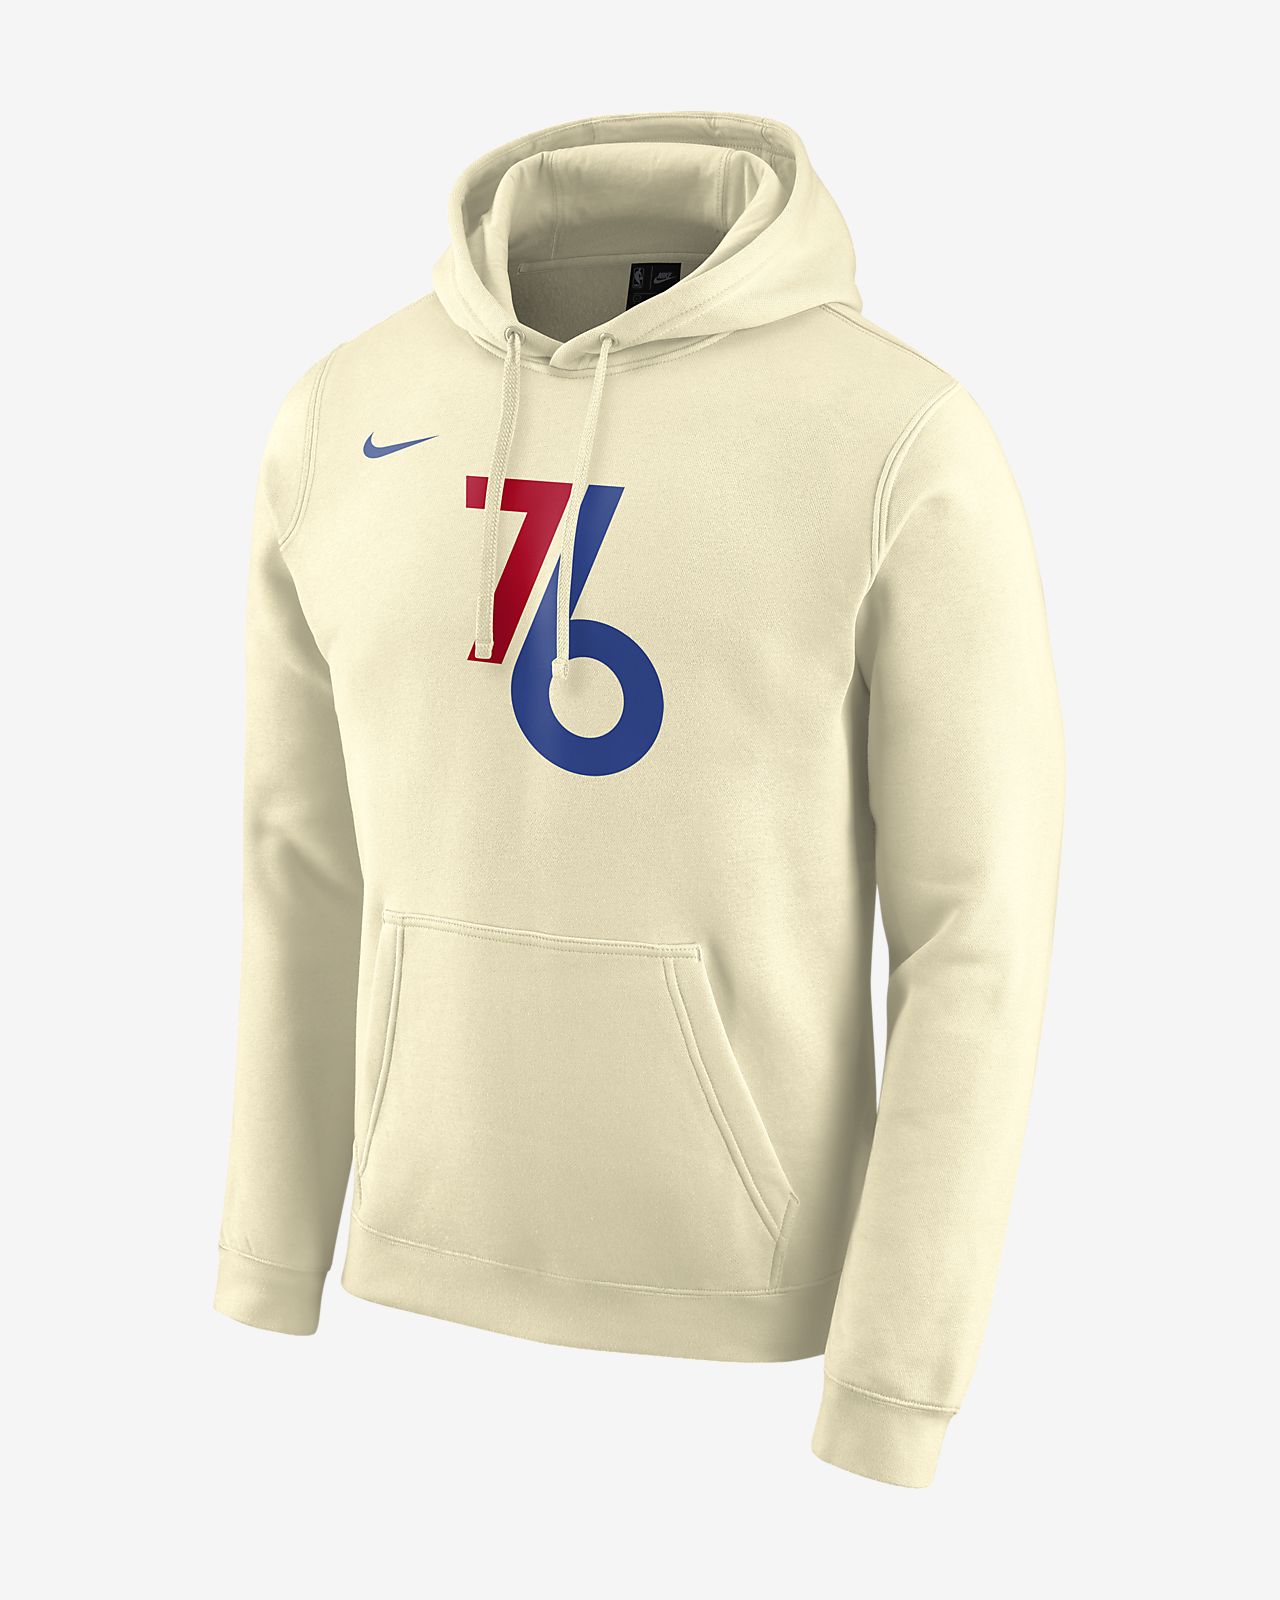 nike 76ers hoodie